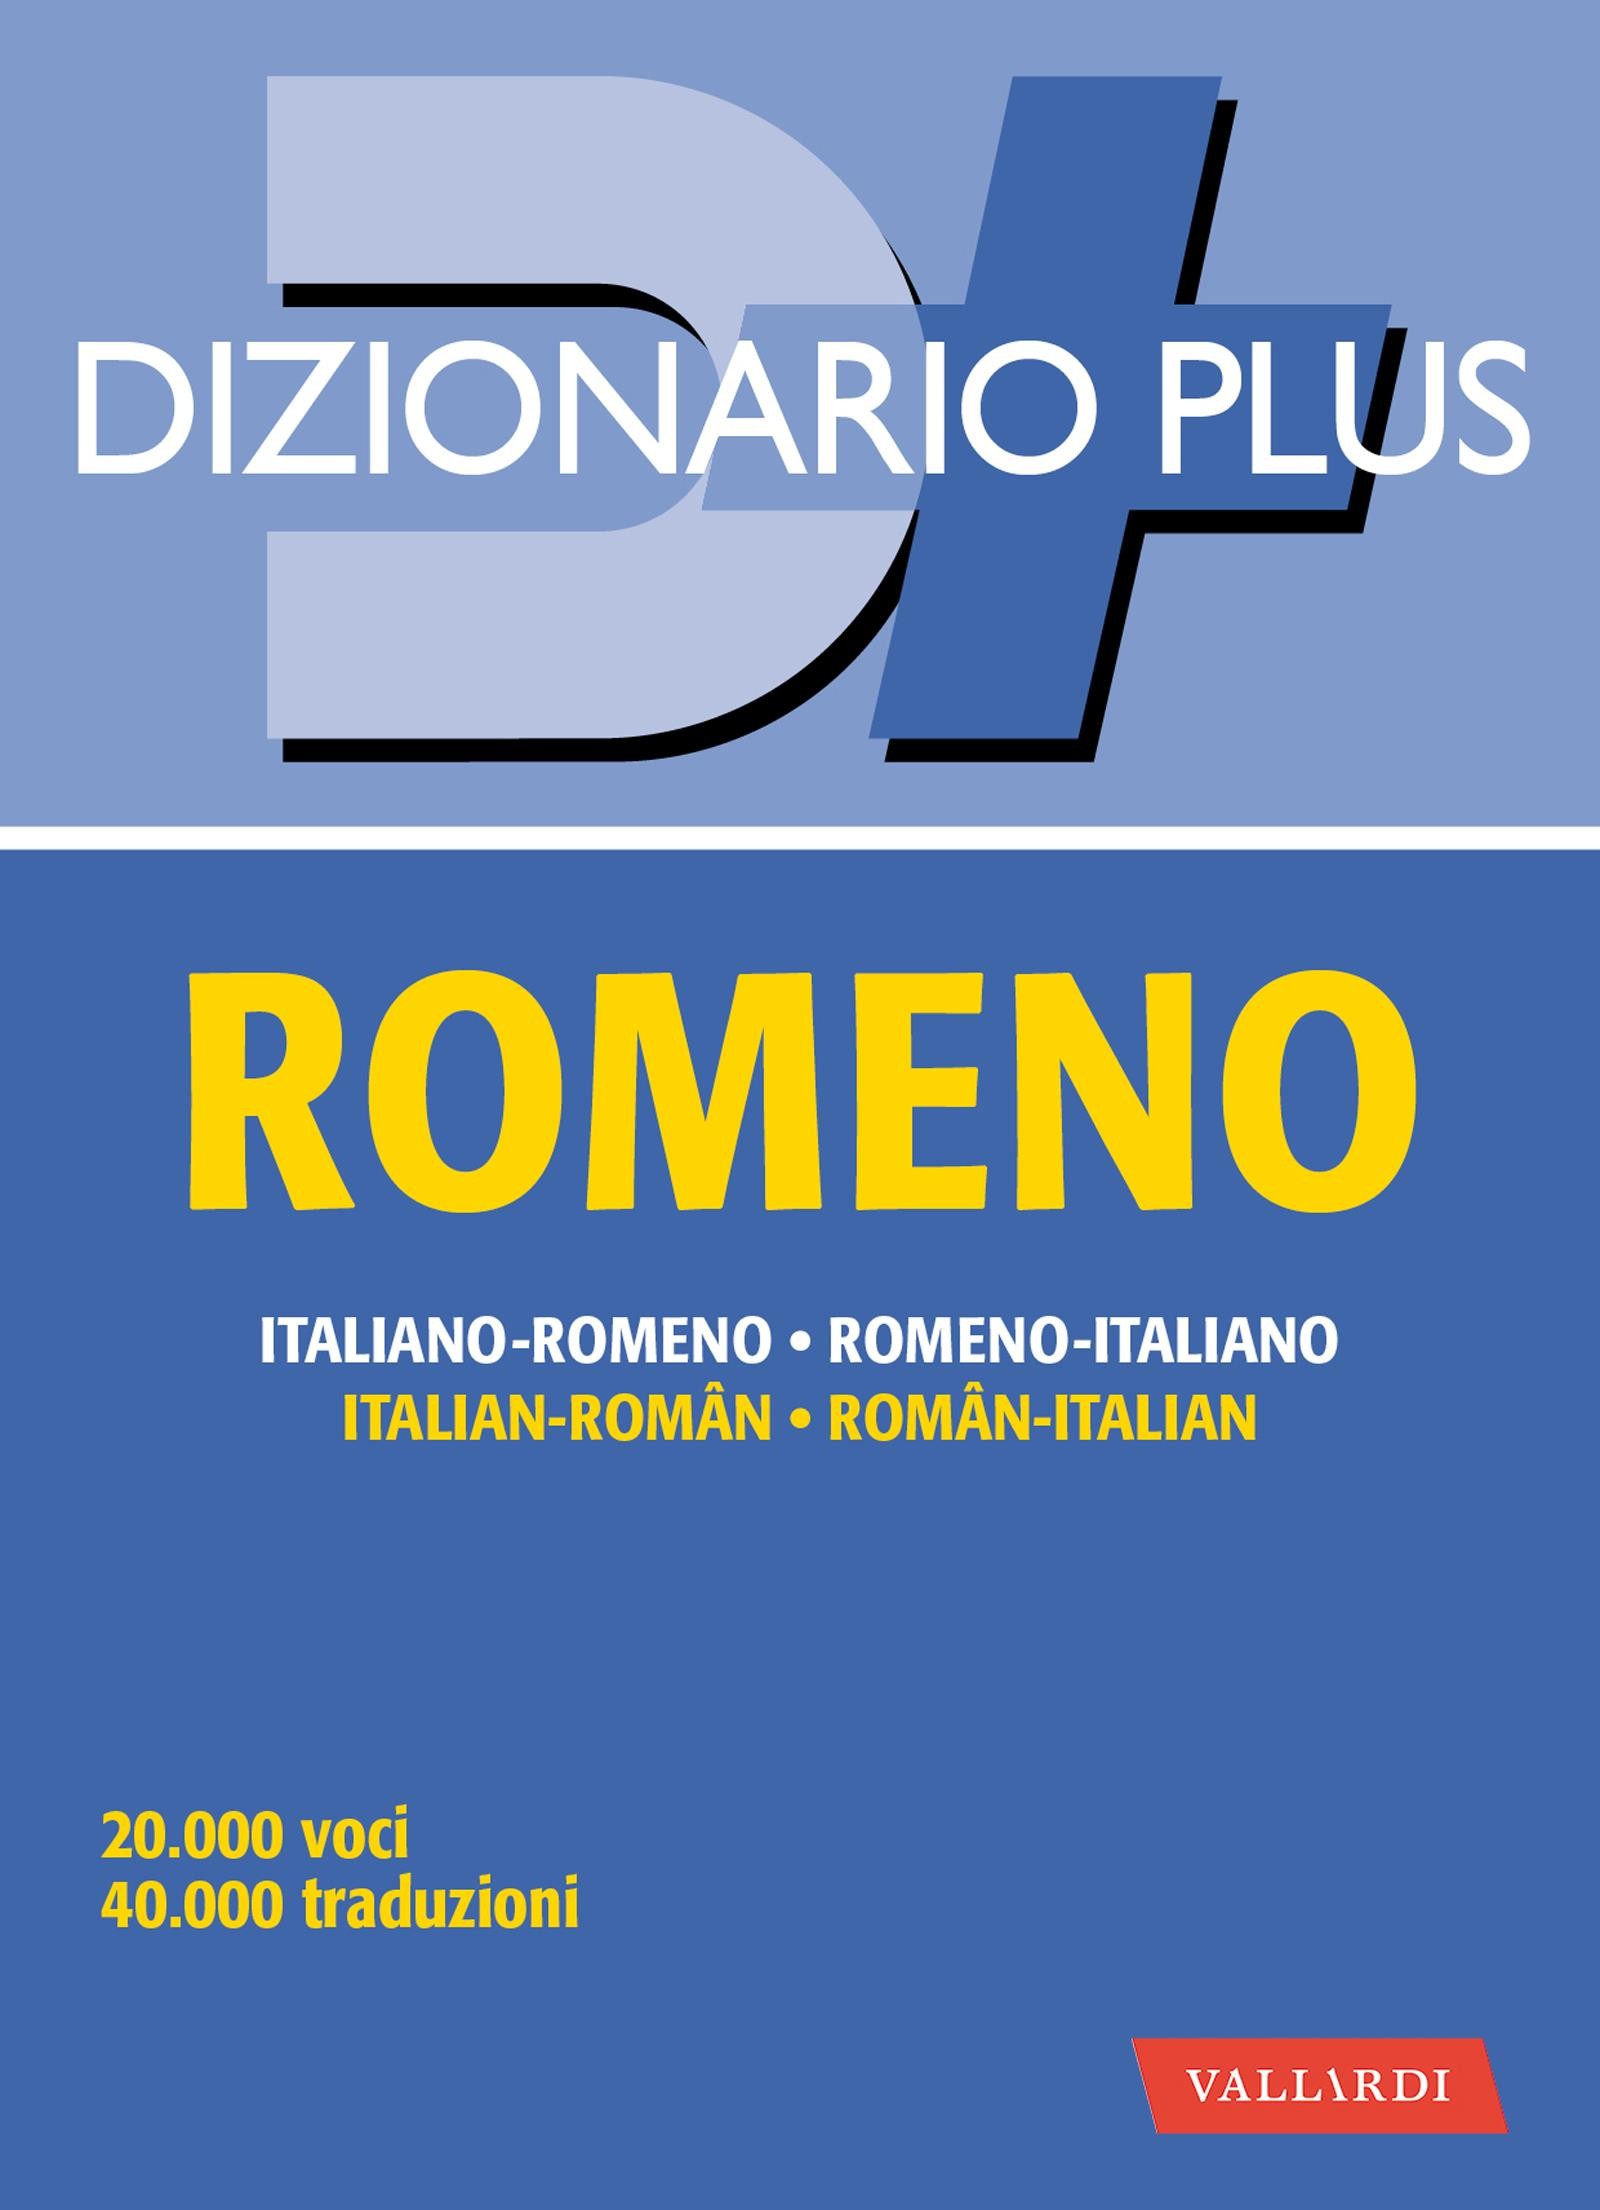 Dizionario romeno plus - Librerie.coop